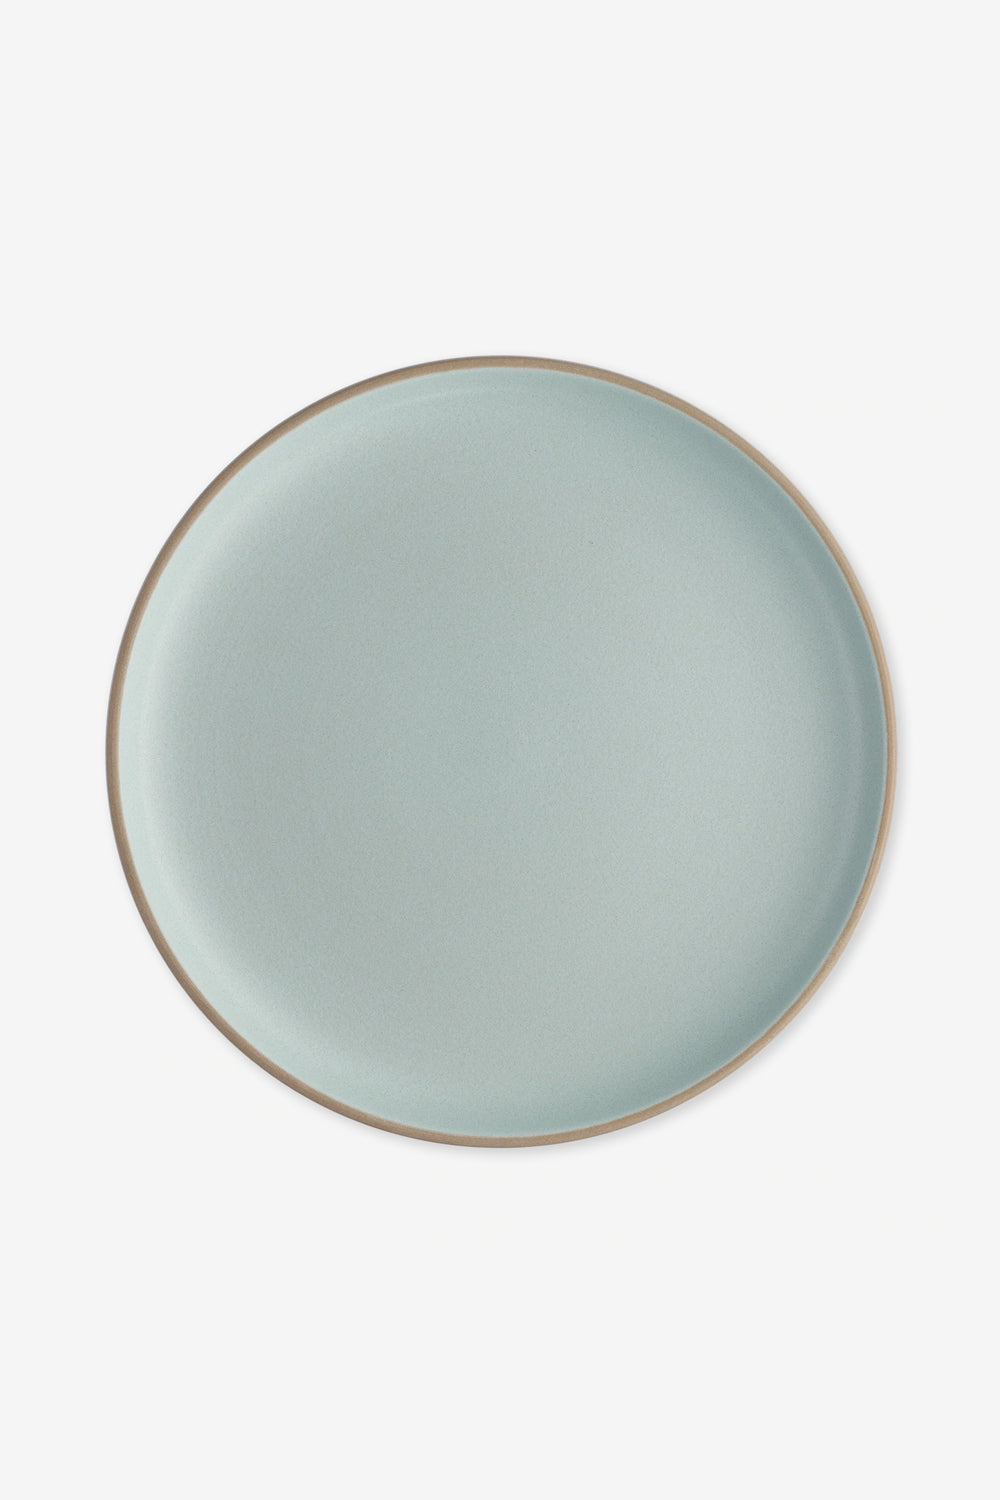 Heath Ceramics Serving Platter in Aqua Blue